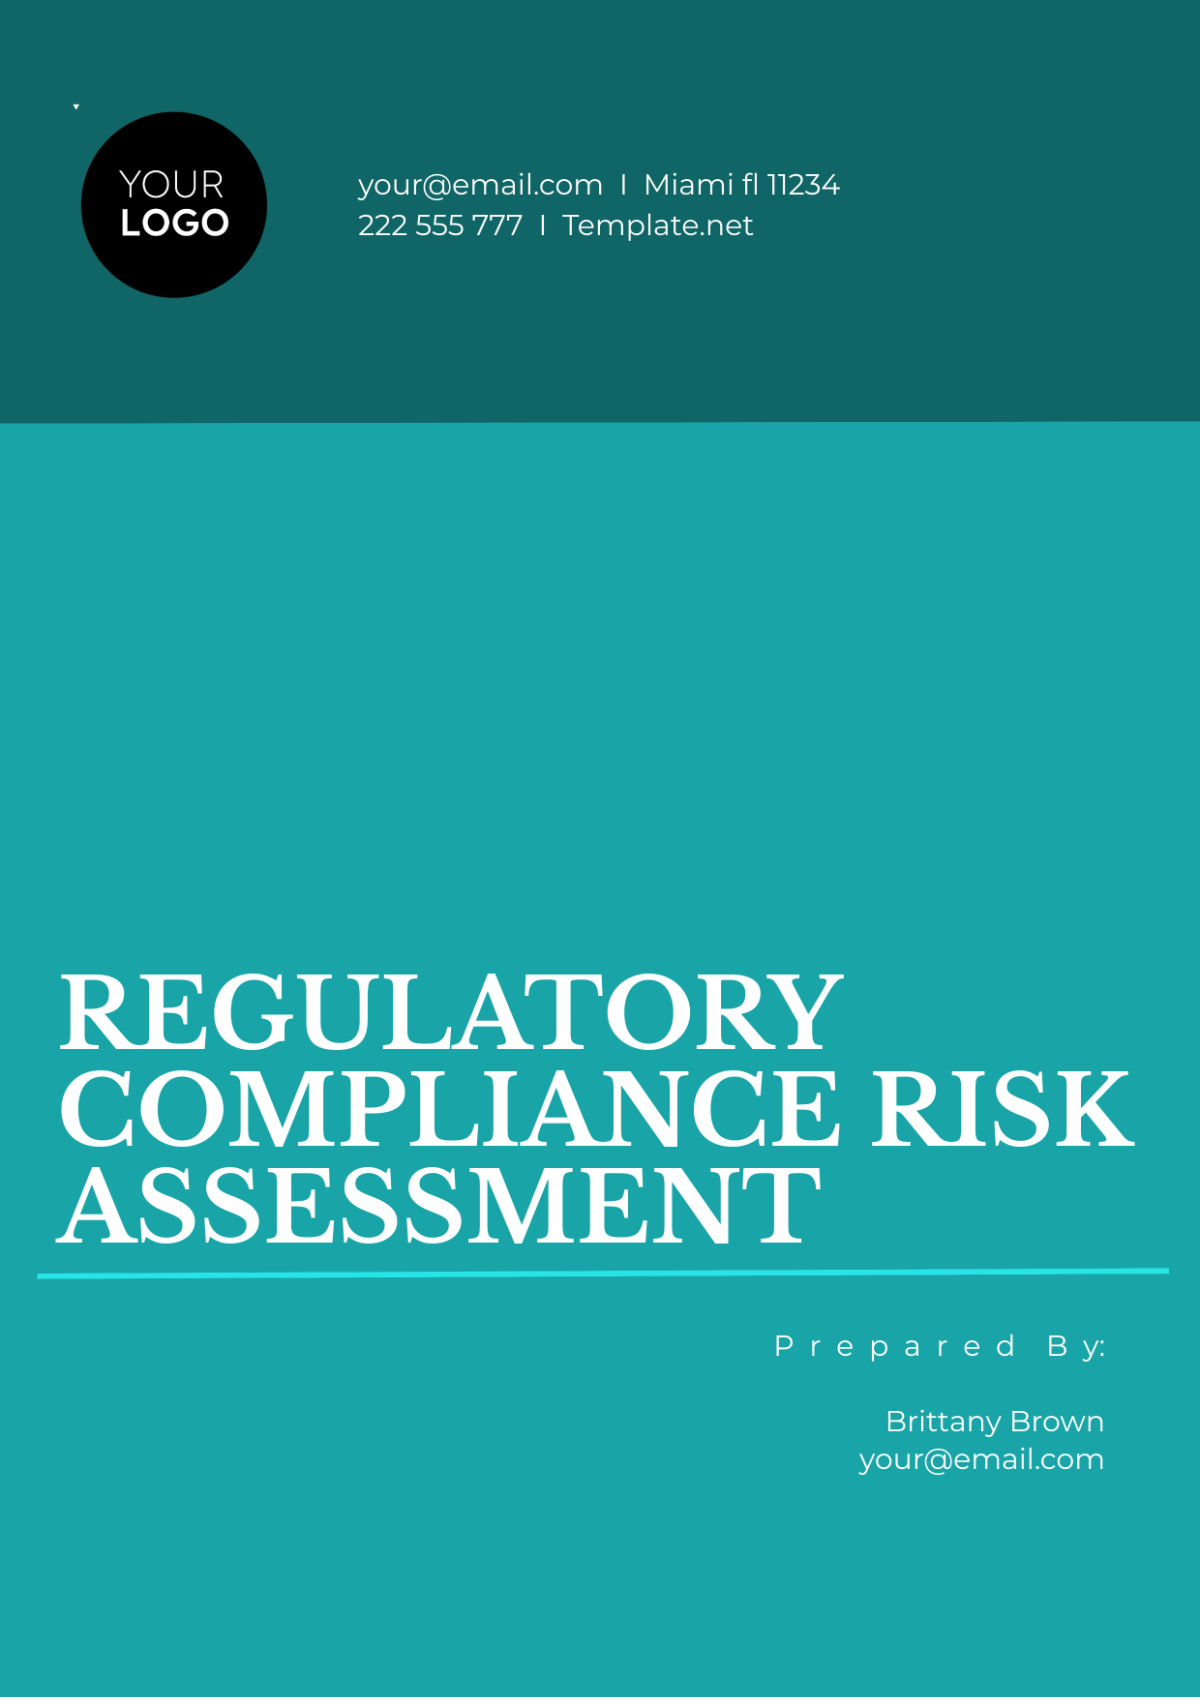 Regulatory Compliance Risk Assessment Template